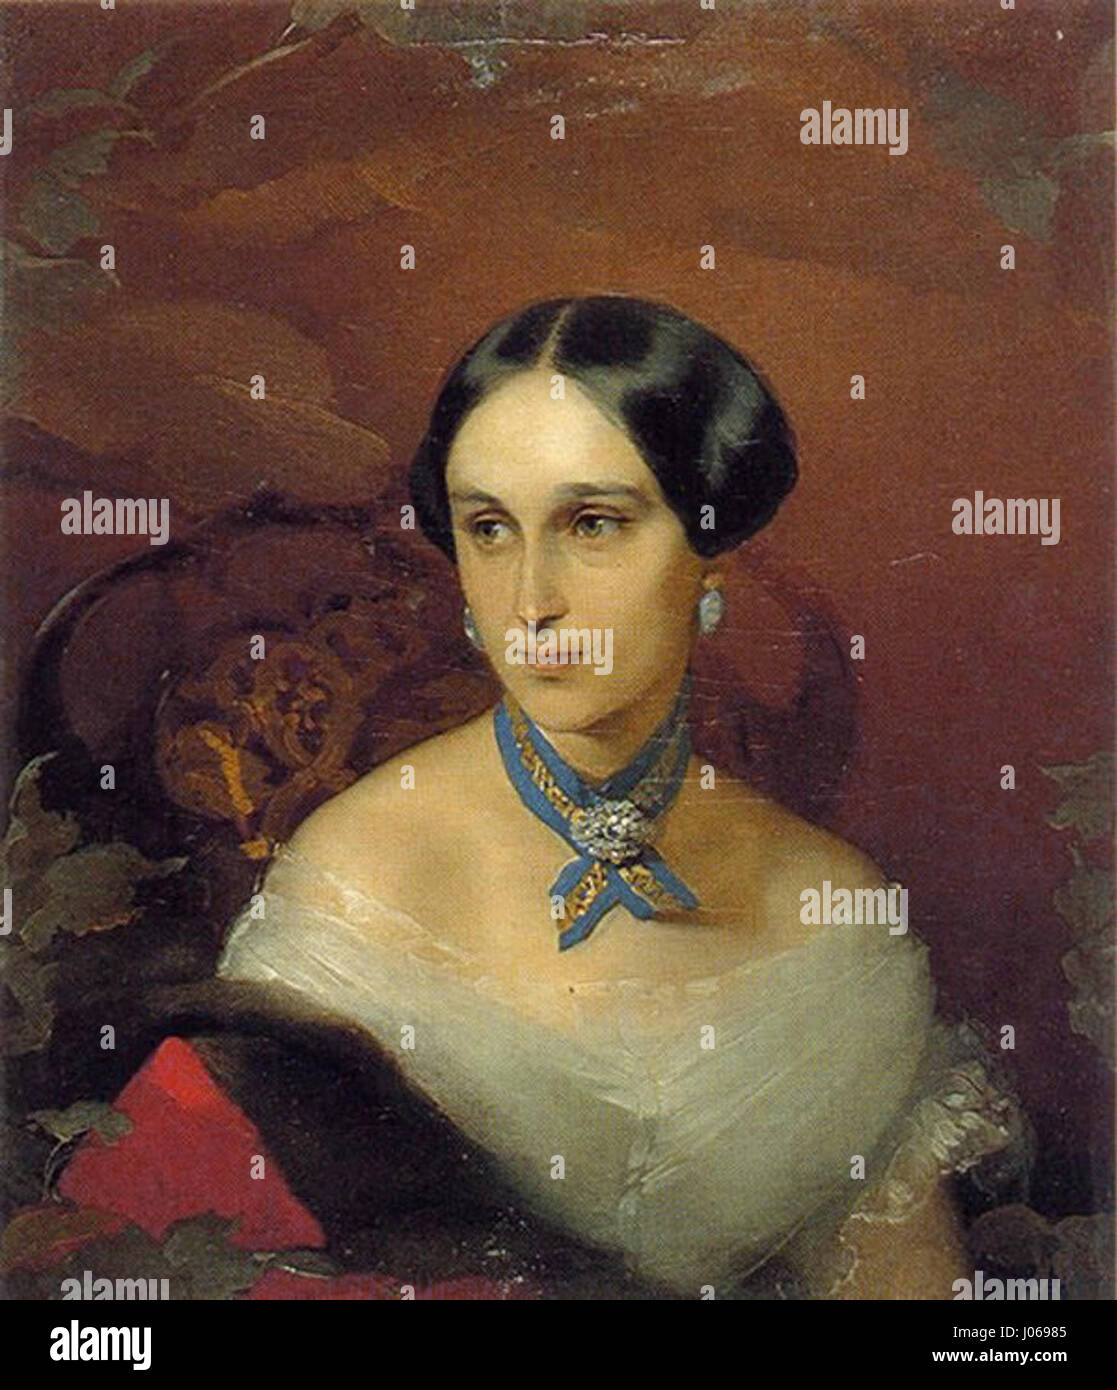 фотография жены пушкина